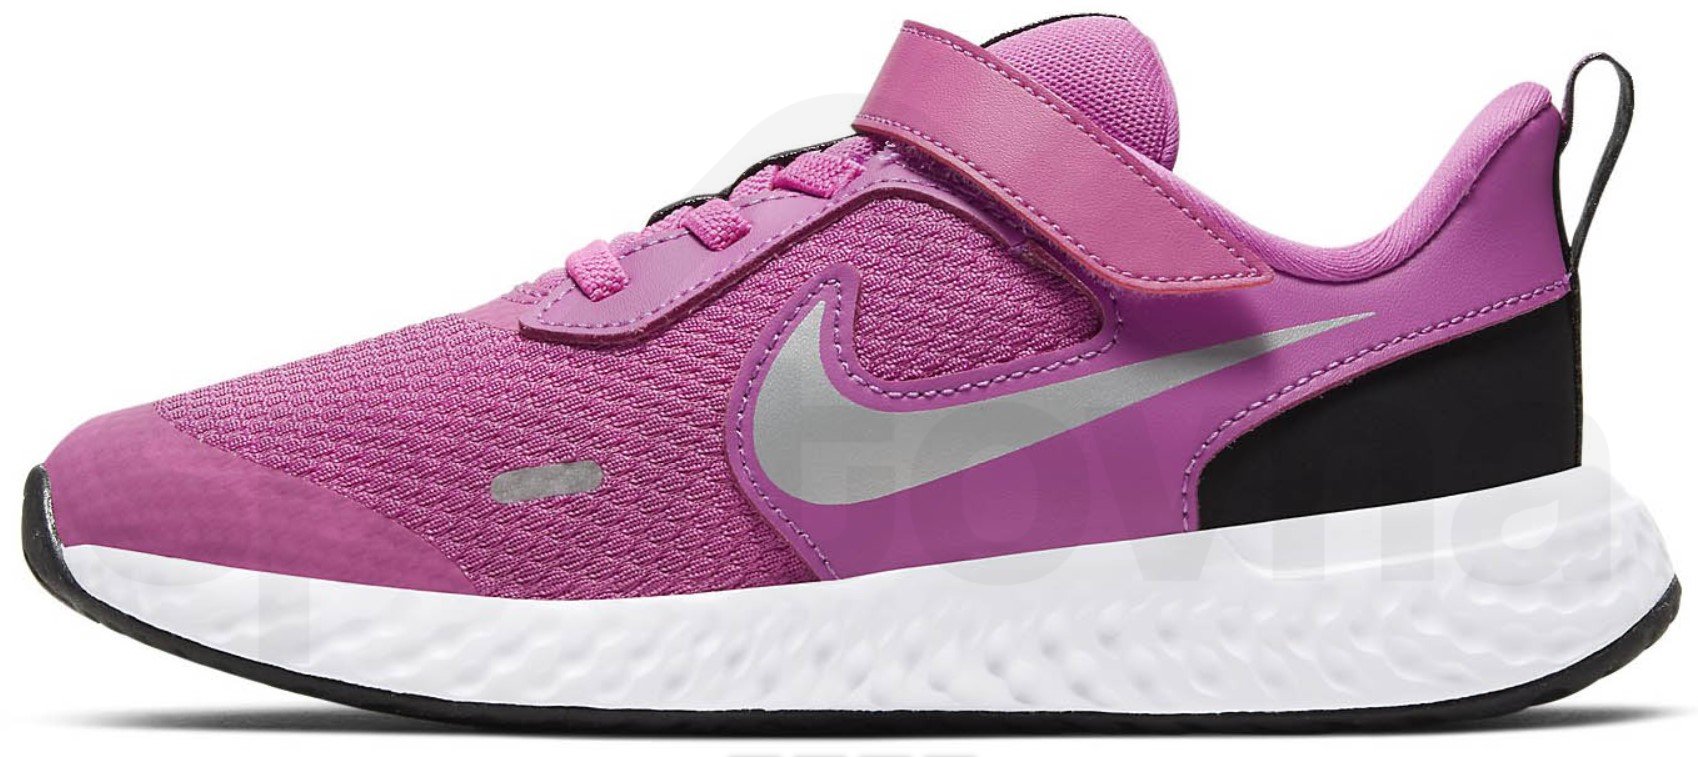 Obuv Nike Revolution 5 - růžová